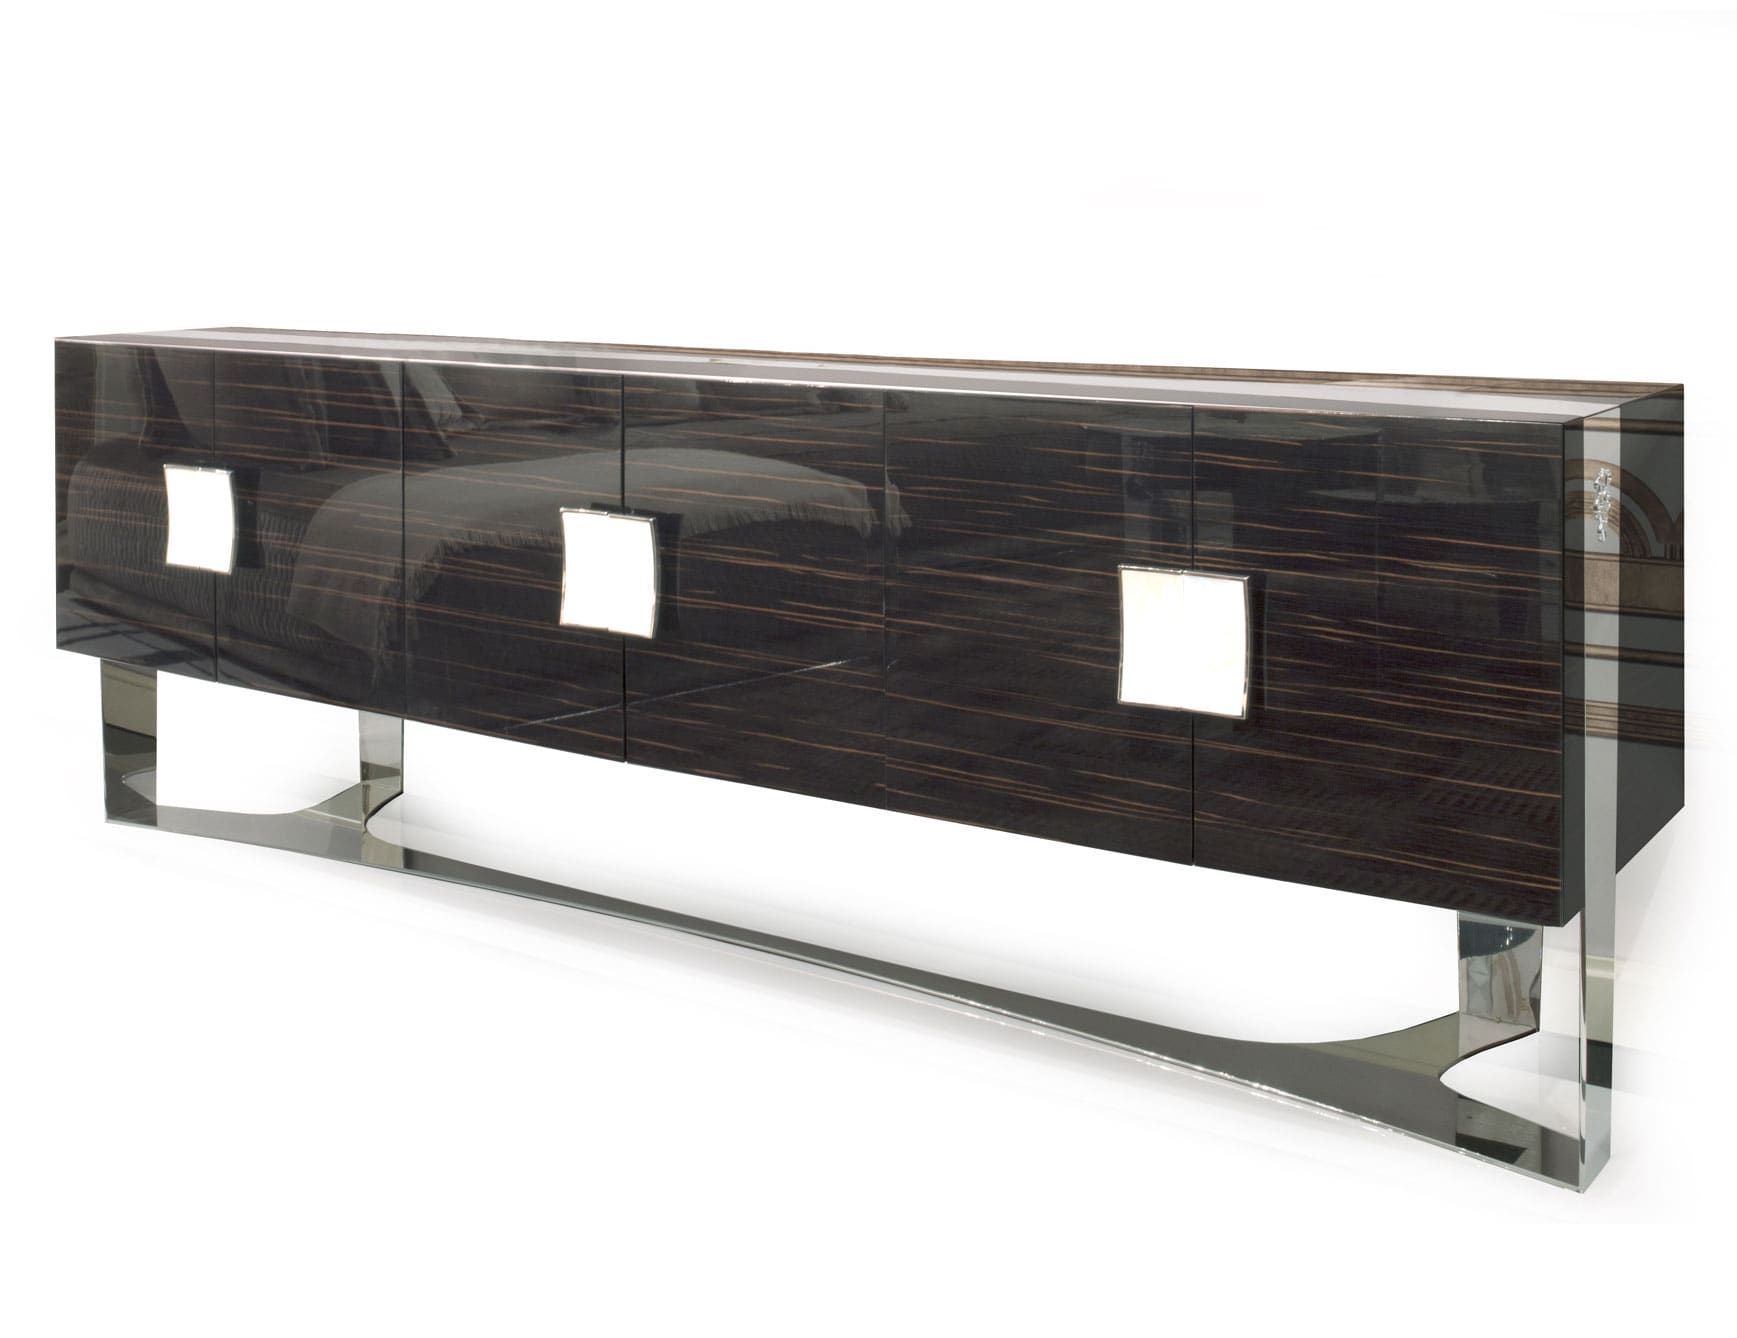 Tanguy modern luxury cabinet with brown veneered wood